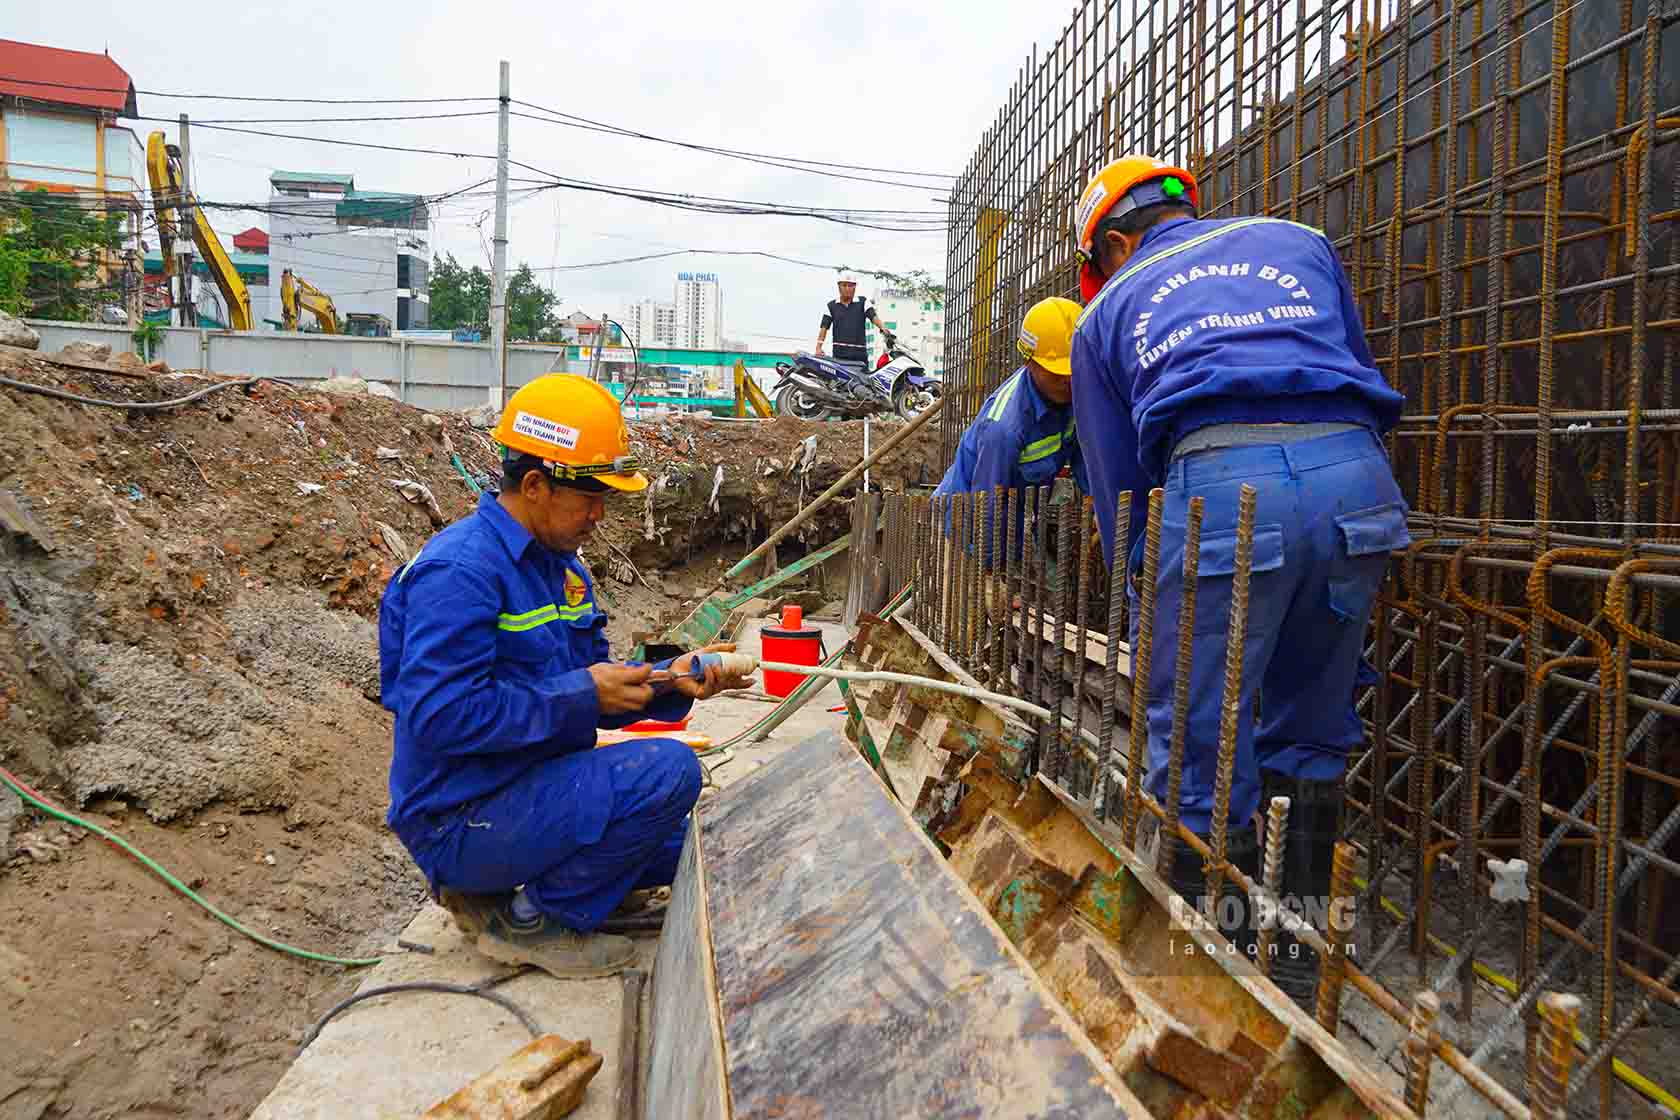  Dự án hầm chui 2.5 qua nút giao Kim Đồng - Giải Phóng có tổng mức đầu tư lên đến 778 tỉ đồng sử dụng ngân sách TP Hà Nội, được khởi công tháng 10.2022 và dự kiến hoàn thành sau 3 năm.